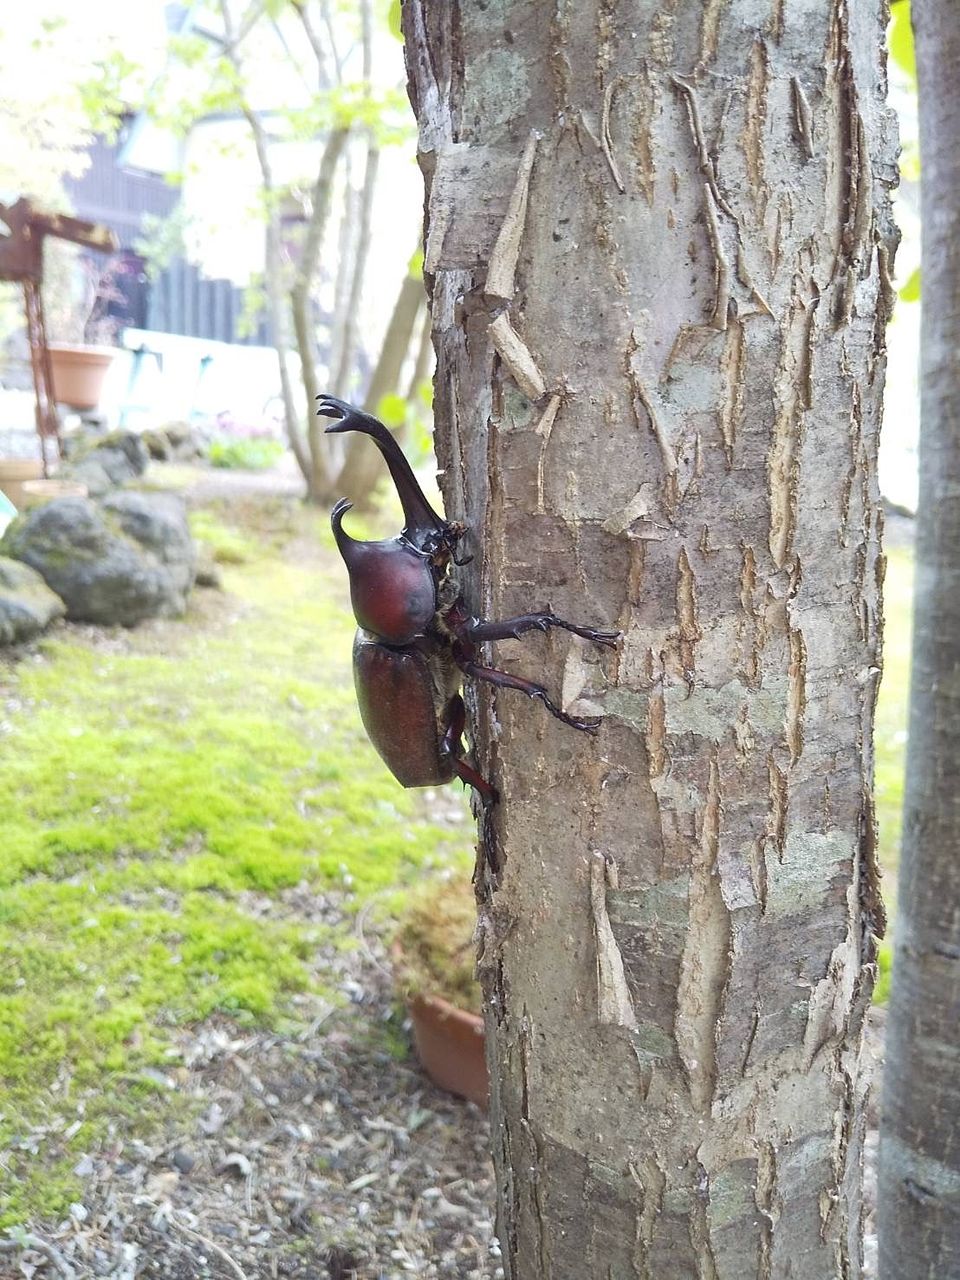 軽井沢の桂の木に登り始めたカブトムシ